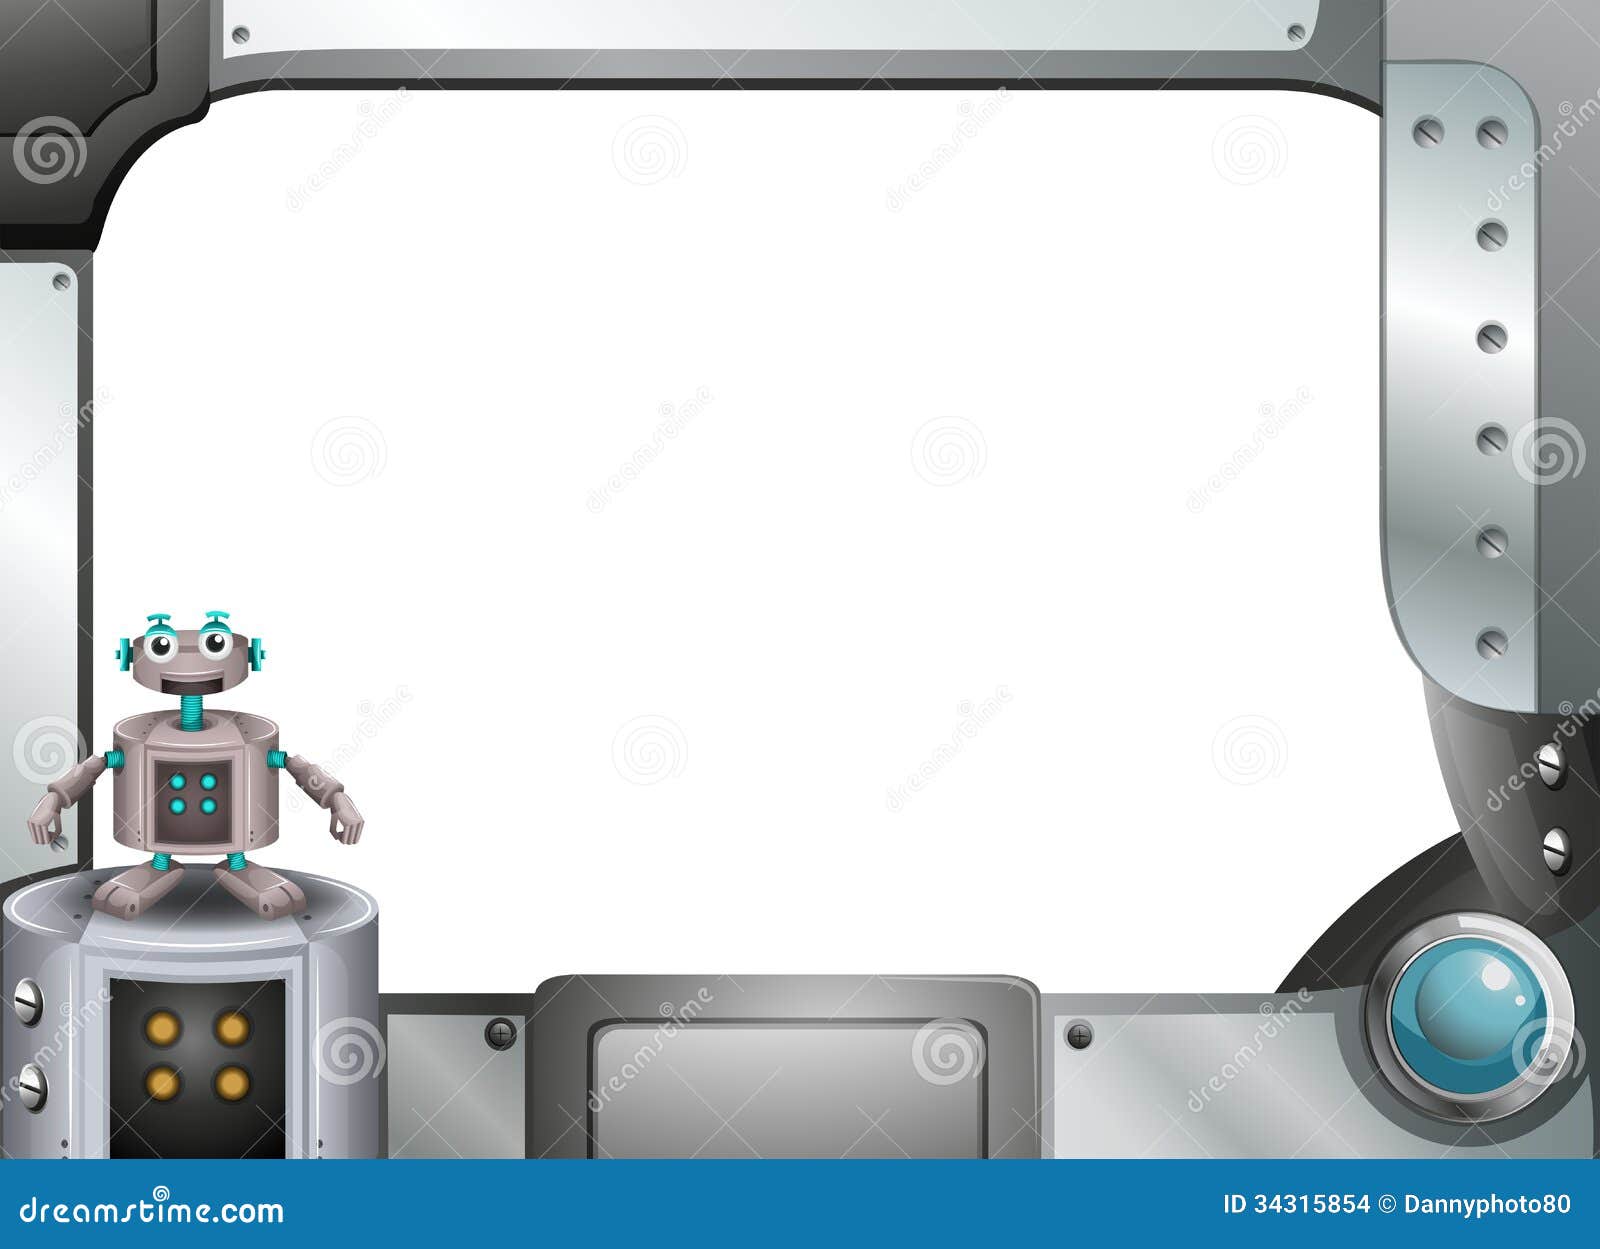 A Gray Metallic Frame with a Robot Stock Vector - of manmade, creativity: 34315854